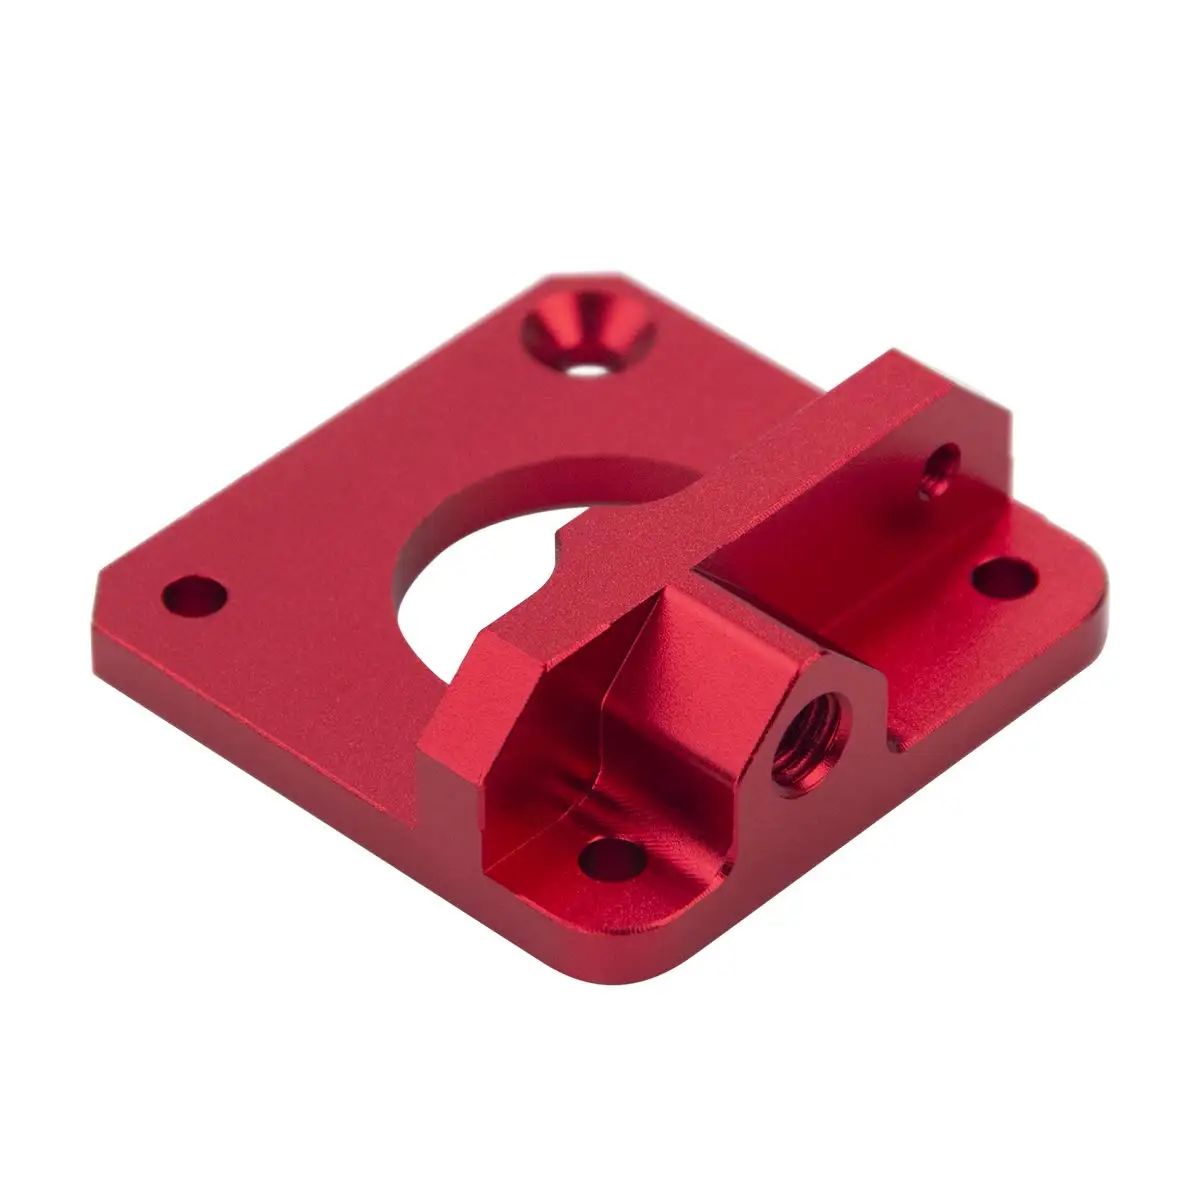 מדפסת 3D אנדר-3 משודרג אלומיניום MK8 מכבש נוהג להאכיל הערכה על אנדר 3/3 Pro/3 V2, אנדר 5/5 Pro/5 פלוס, CR-10/10